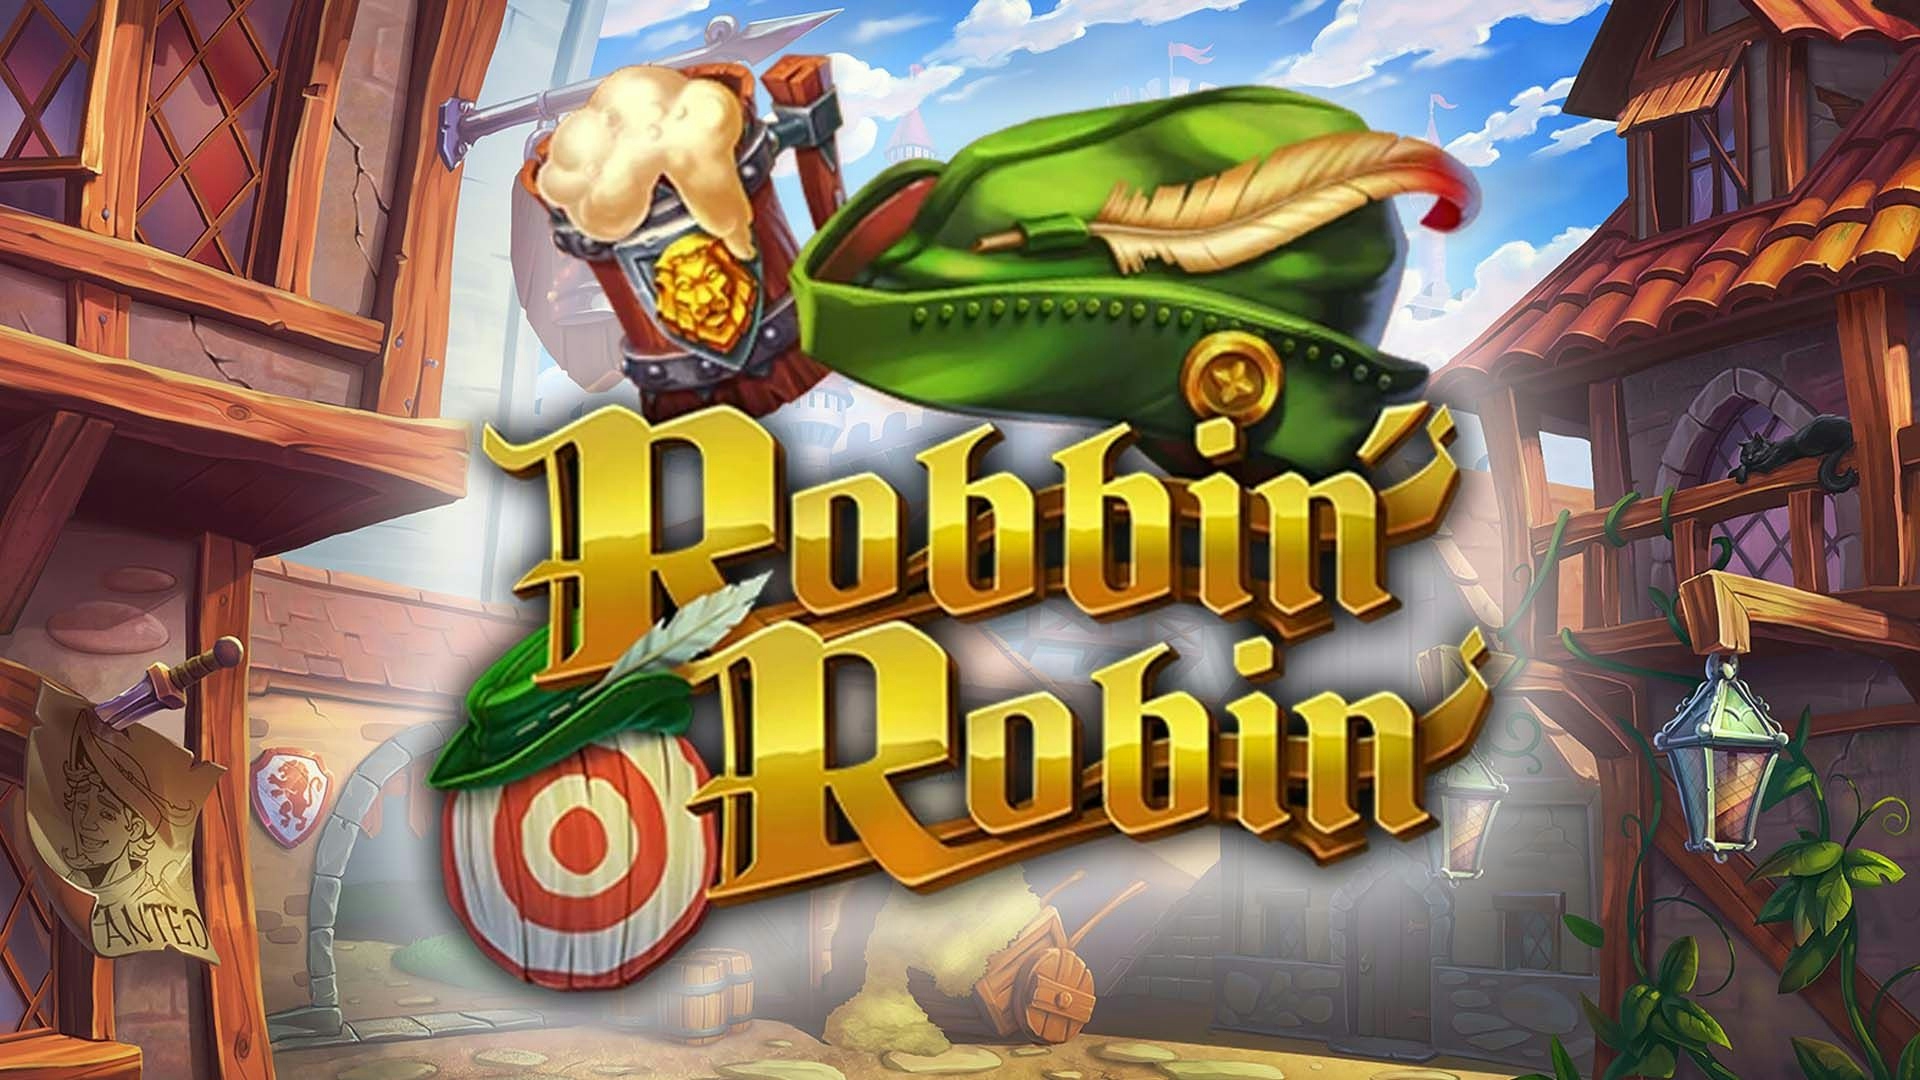 Robbin' Robin